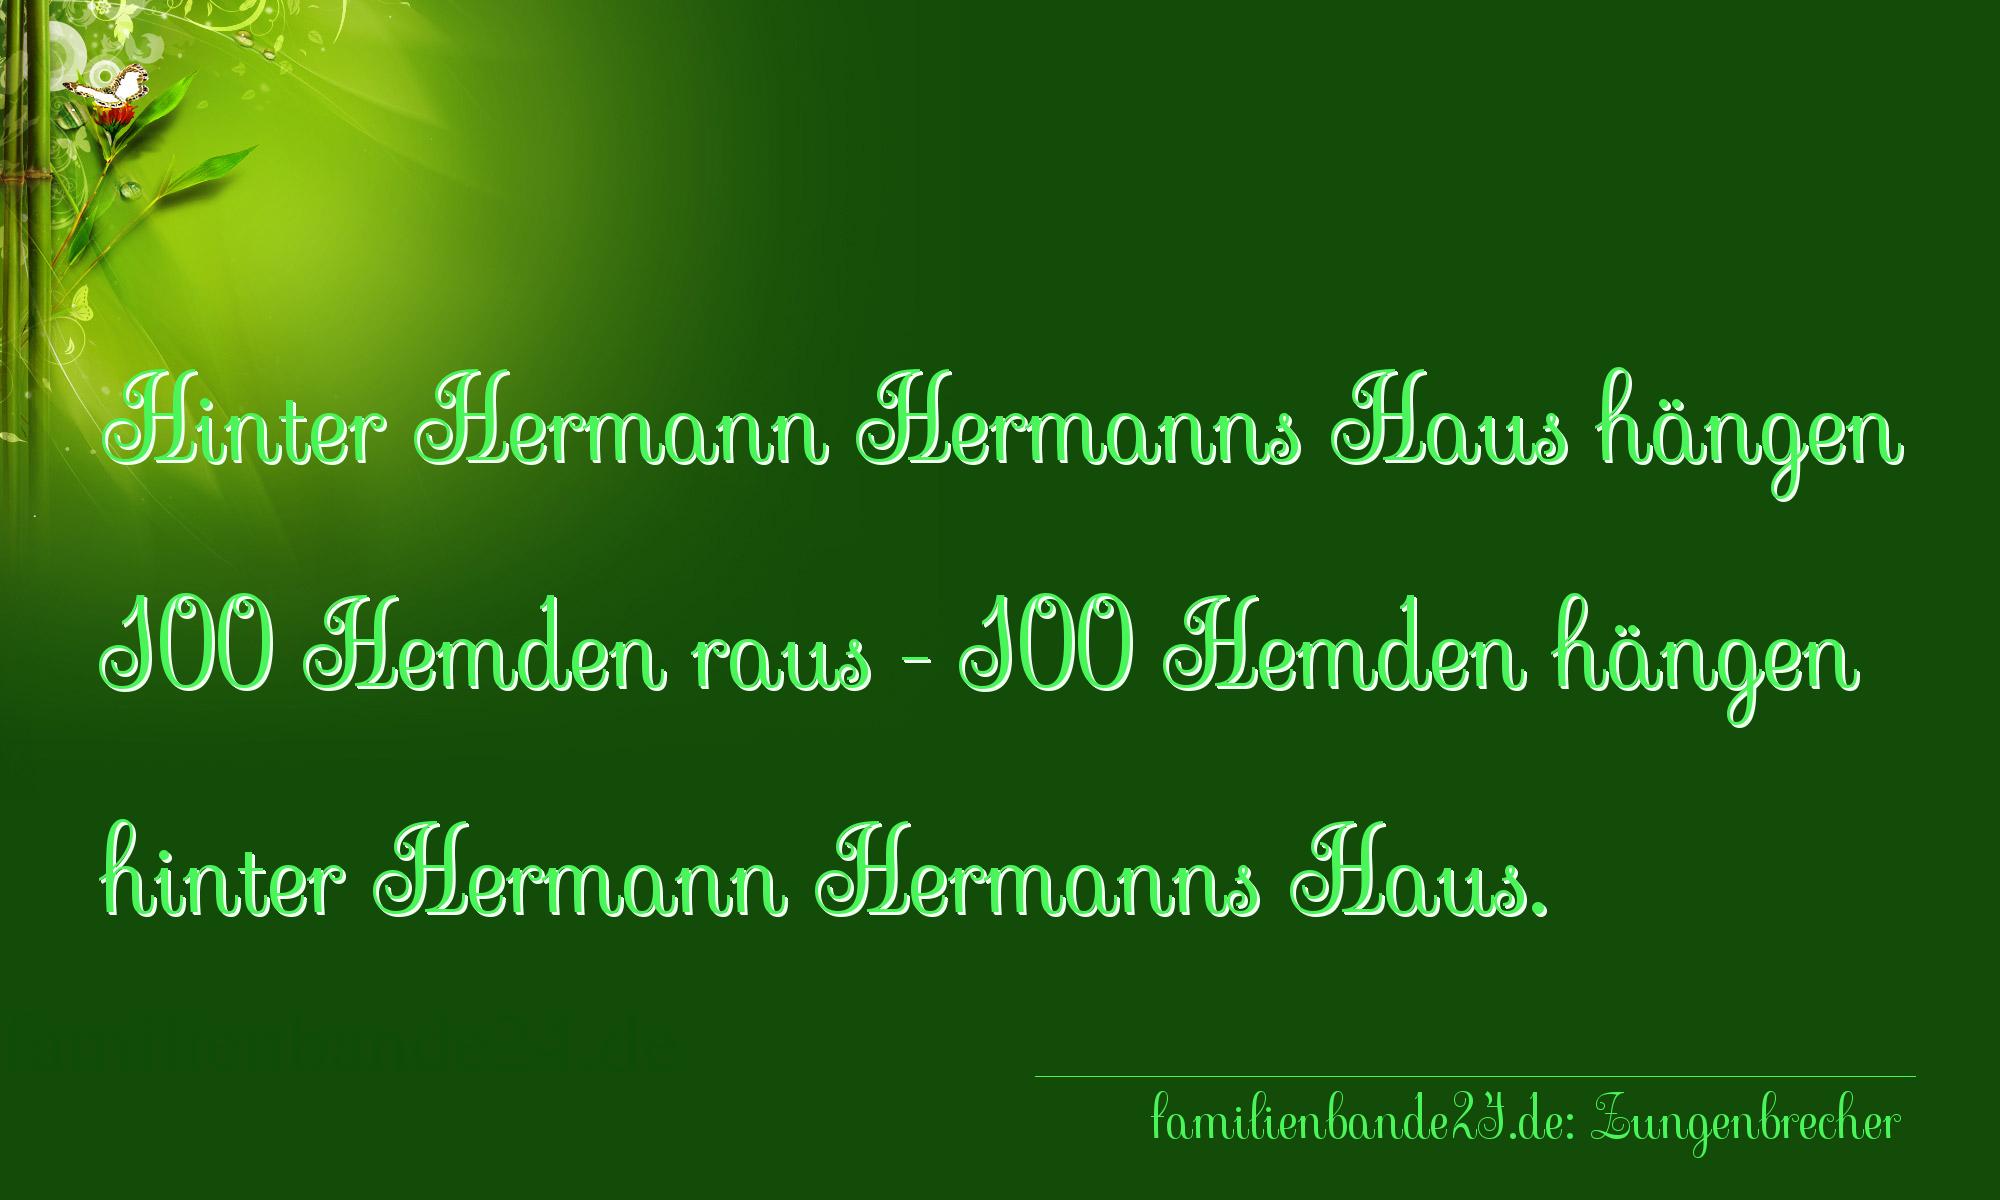 Zungenbrecher Nr. 798: Hinter Hermann Hermanns Haus hängen 100 Hemden raus - 100 [...]